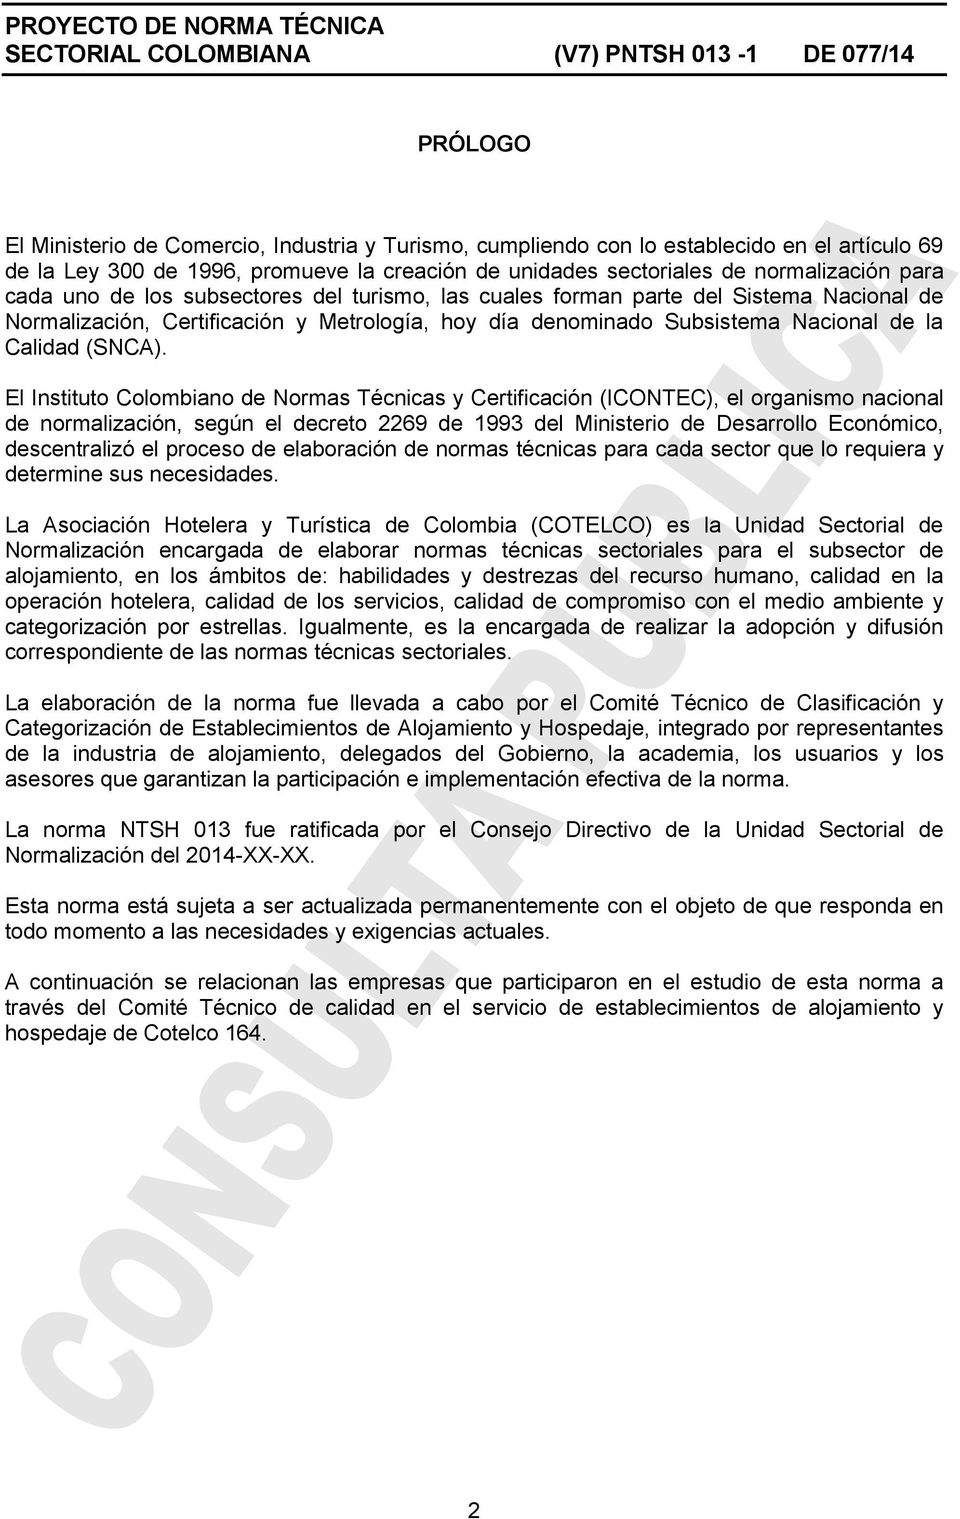 El Instituto Colombiano de Normas Técnicas y Certificación (ICONTEC), el organismo nacional de normalización, según el decreto 2269 de 1993 del Ministerio de Desarrollo Económico, descentralizó el